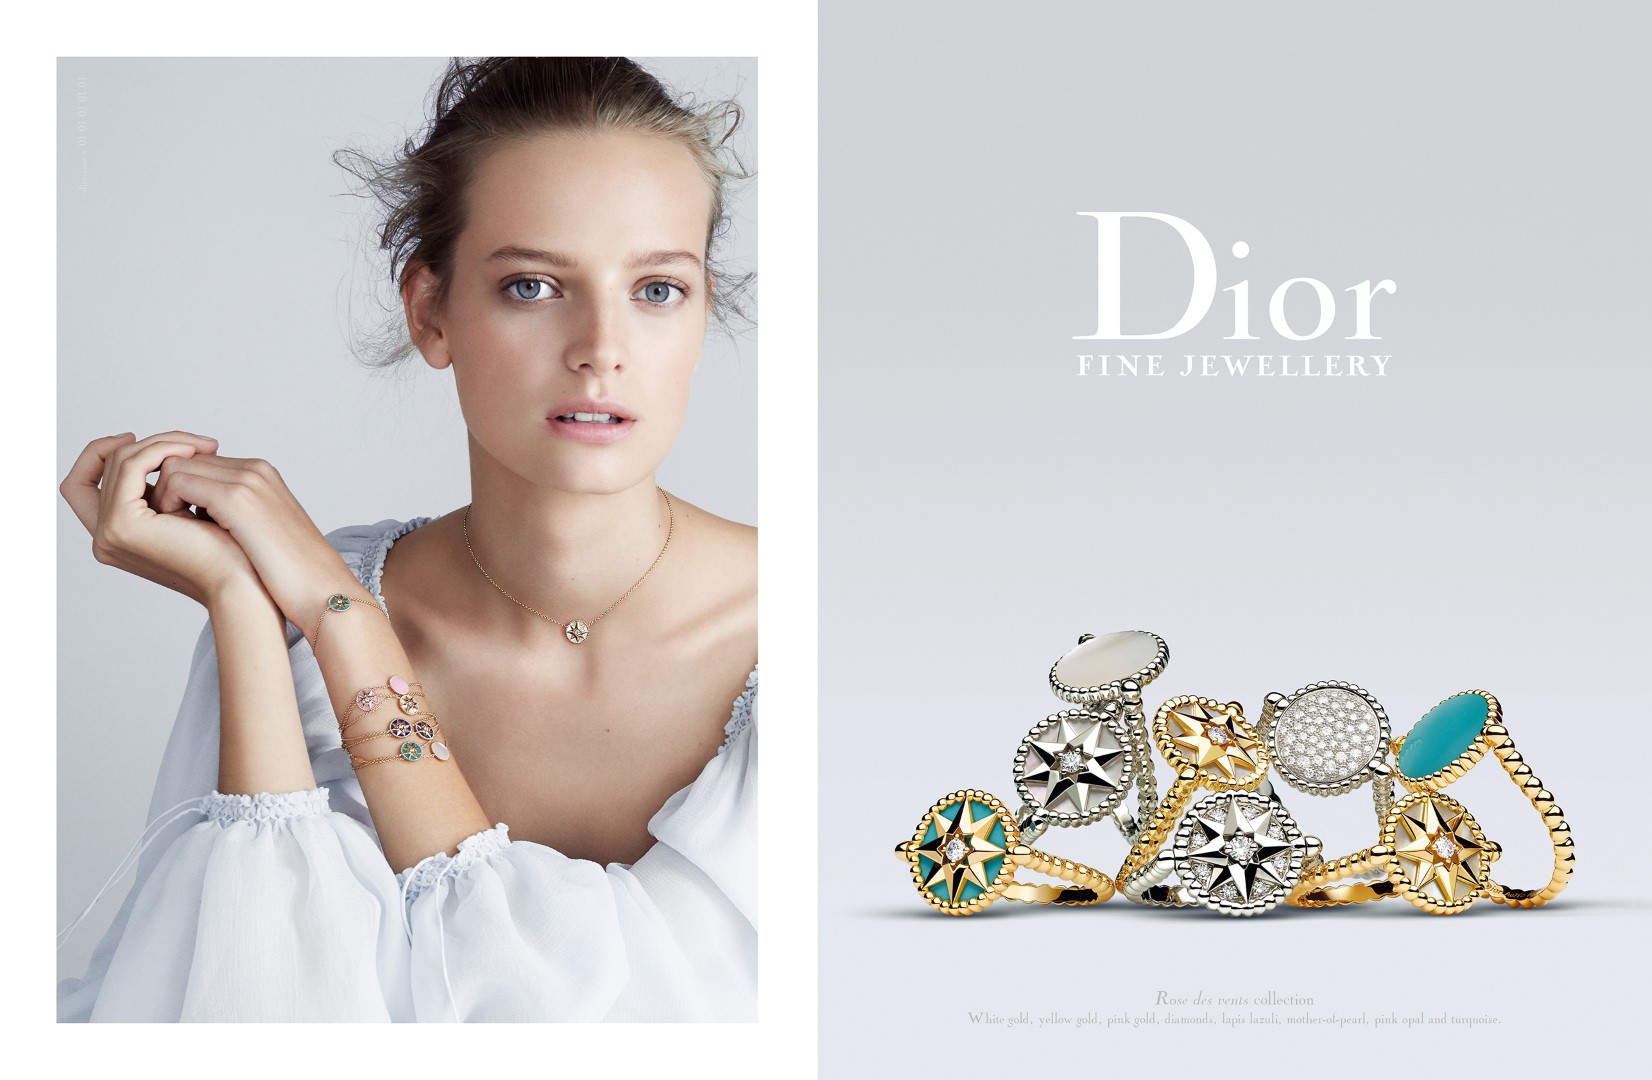 Christian Dior gioielli 2016: la campagna pubblicitaria della collezione Rose des Vents, le foto